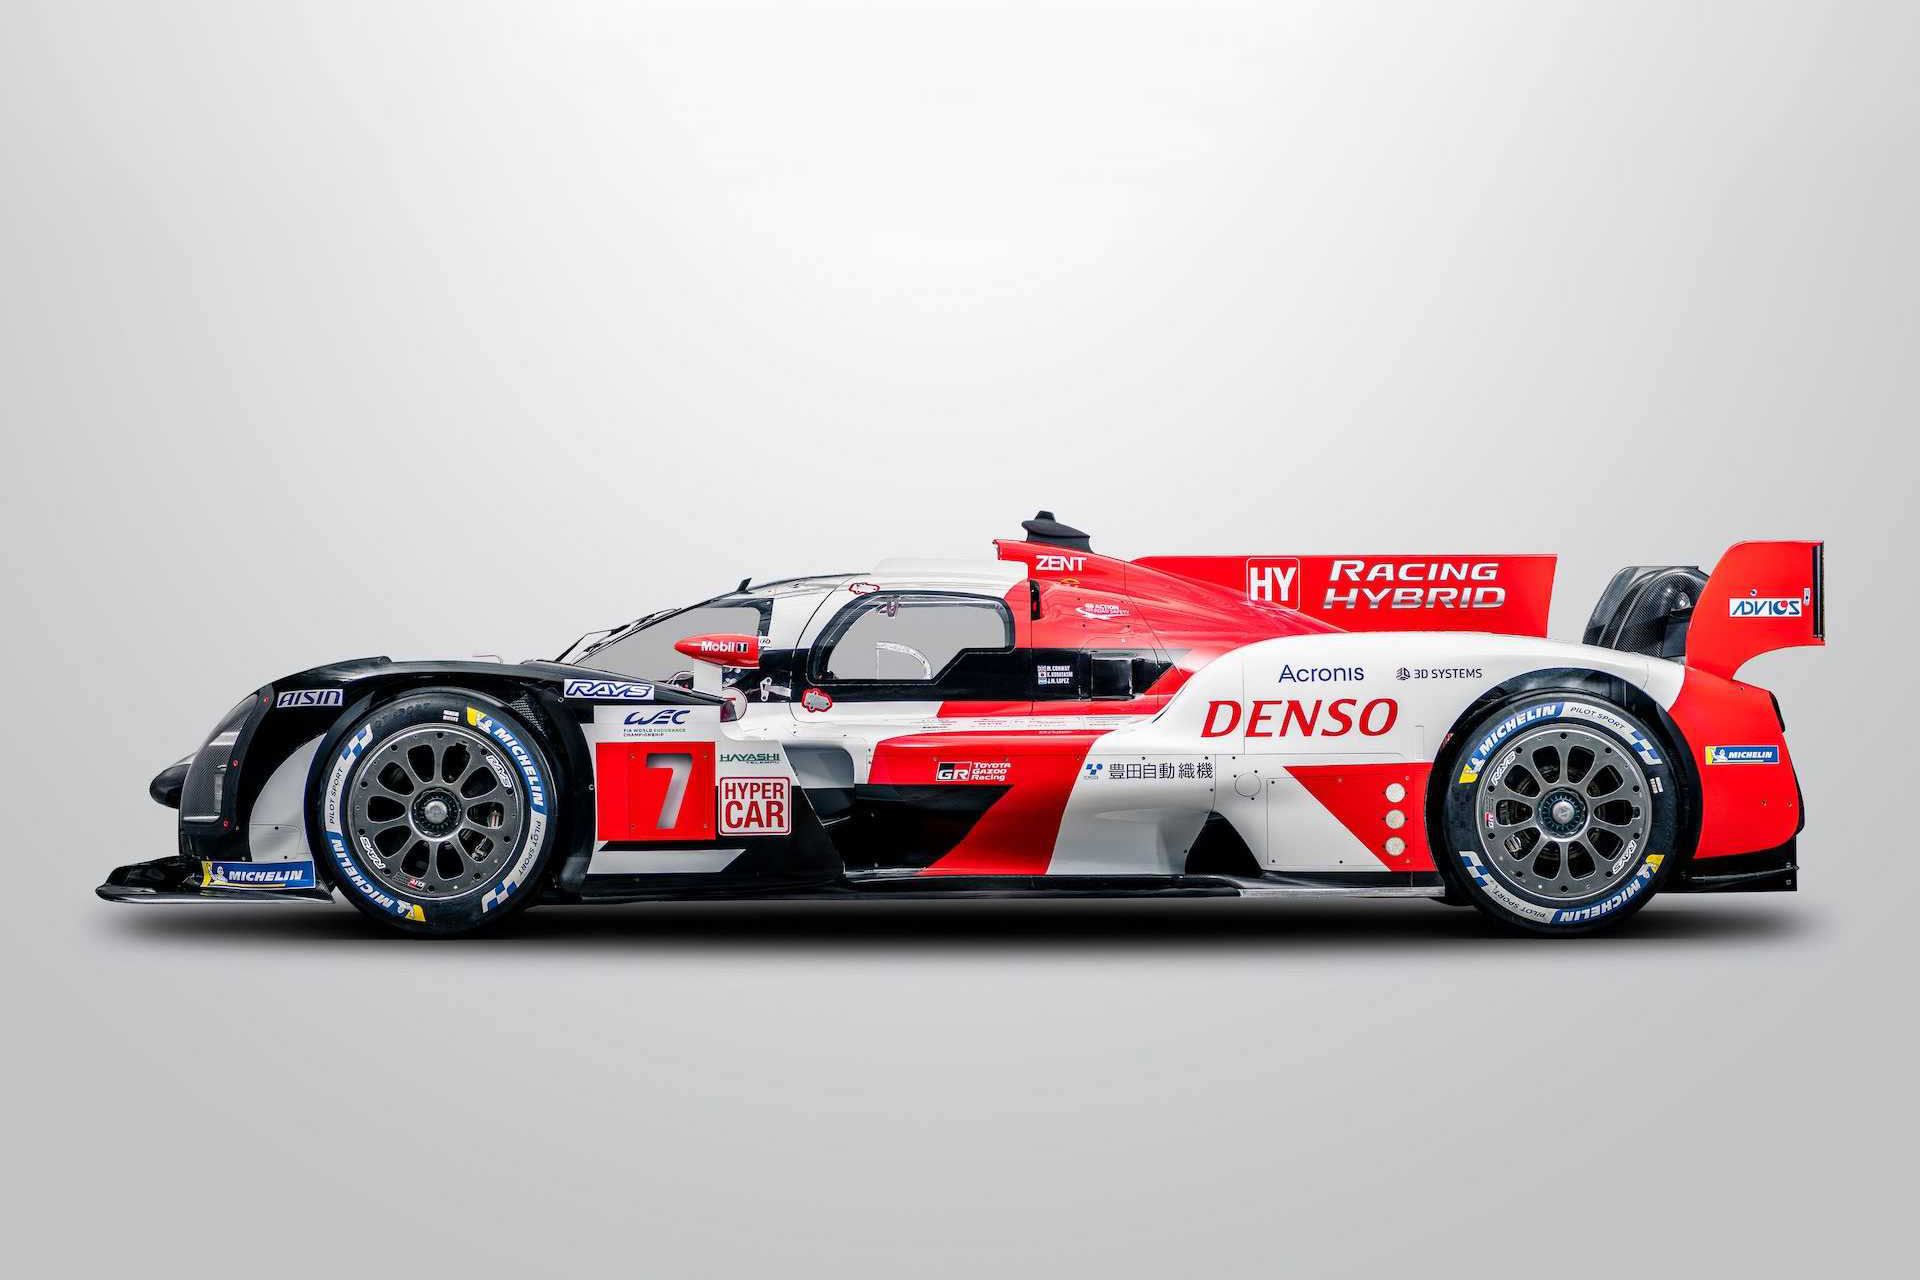 مرجع متخصصين ايران نماي جانبي ابرخودرو هيبريدي تويوتا / Toyota hybrid Hypercar براي شركت در مسابقات لمان / Le Mans